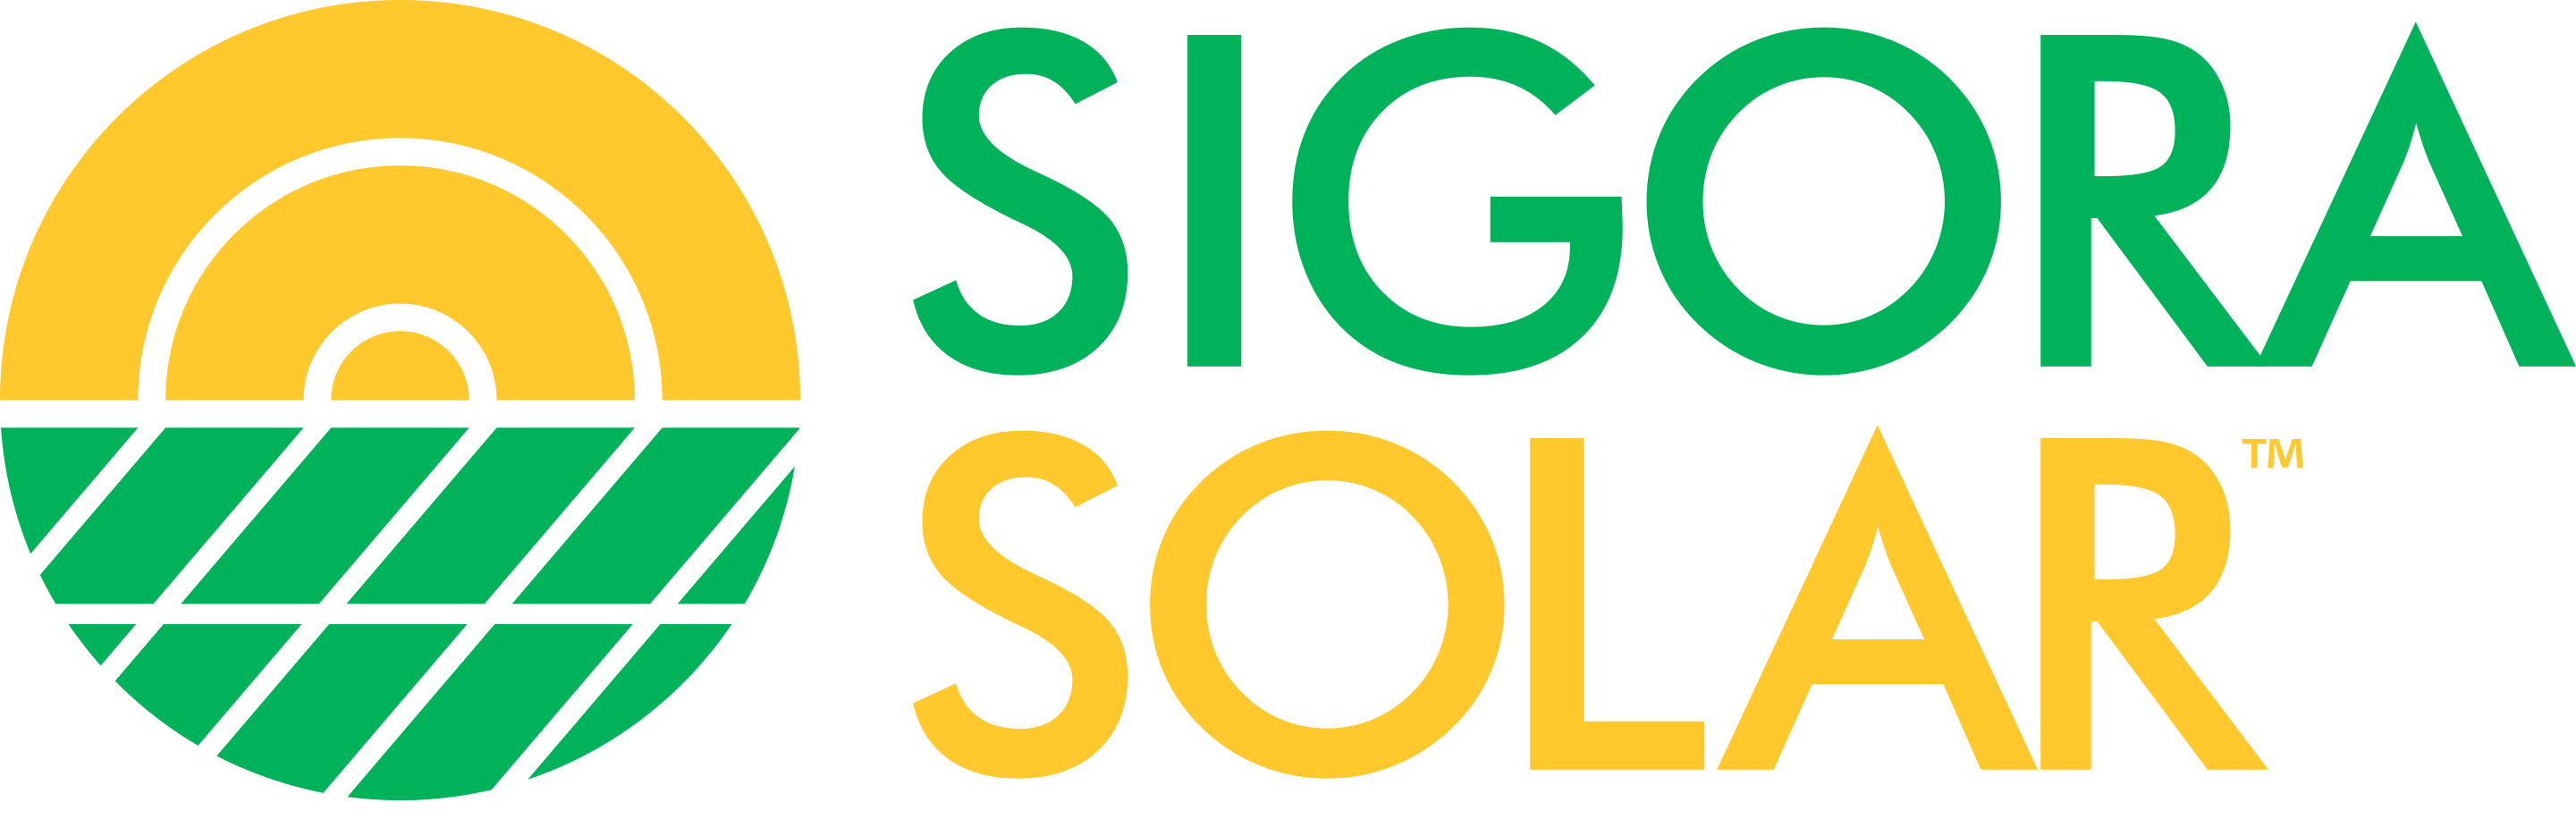 Sigora Solar Logo